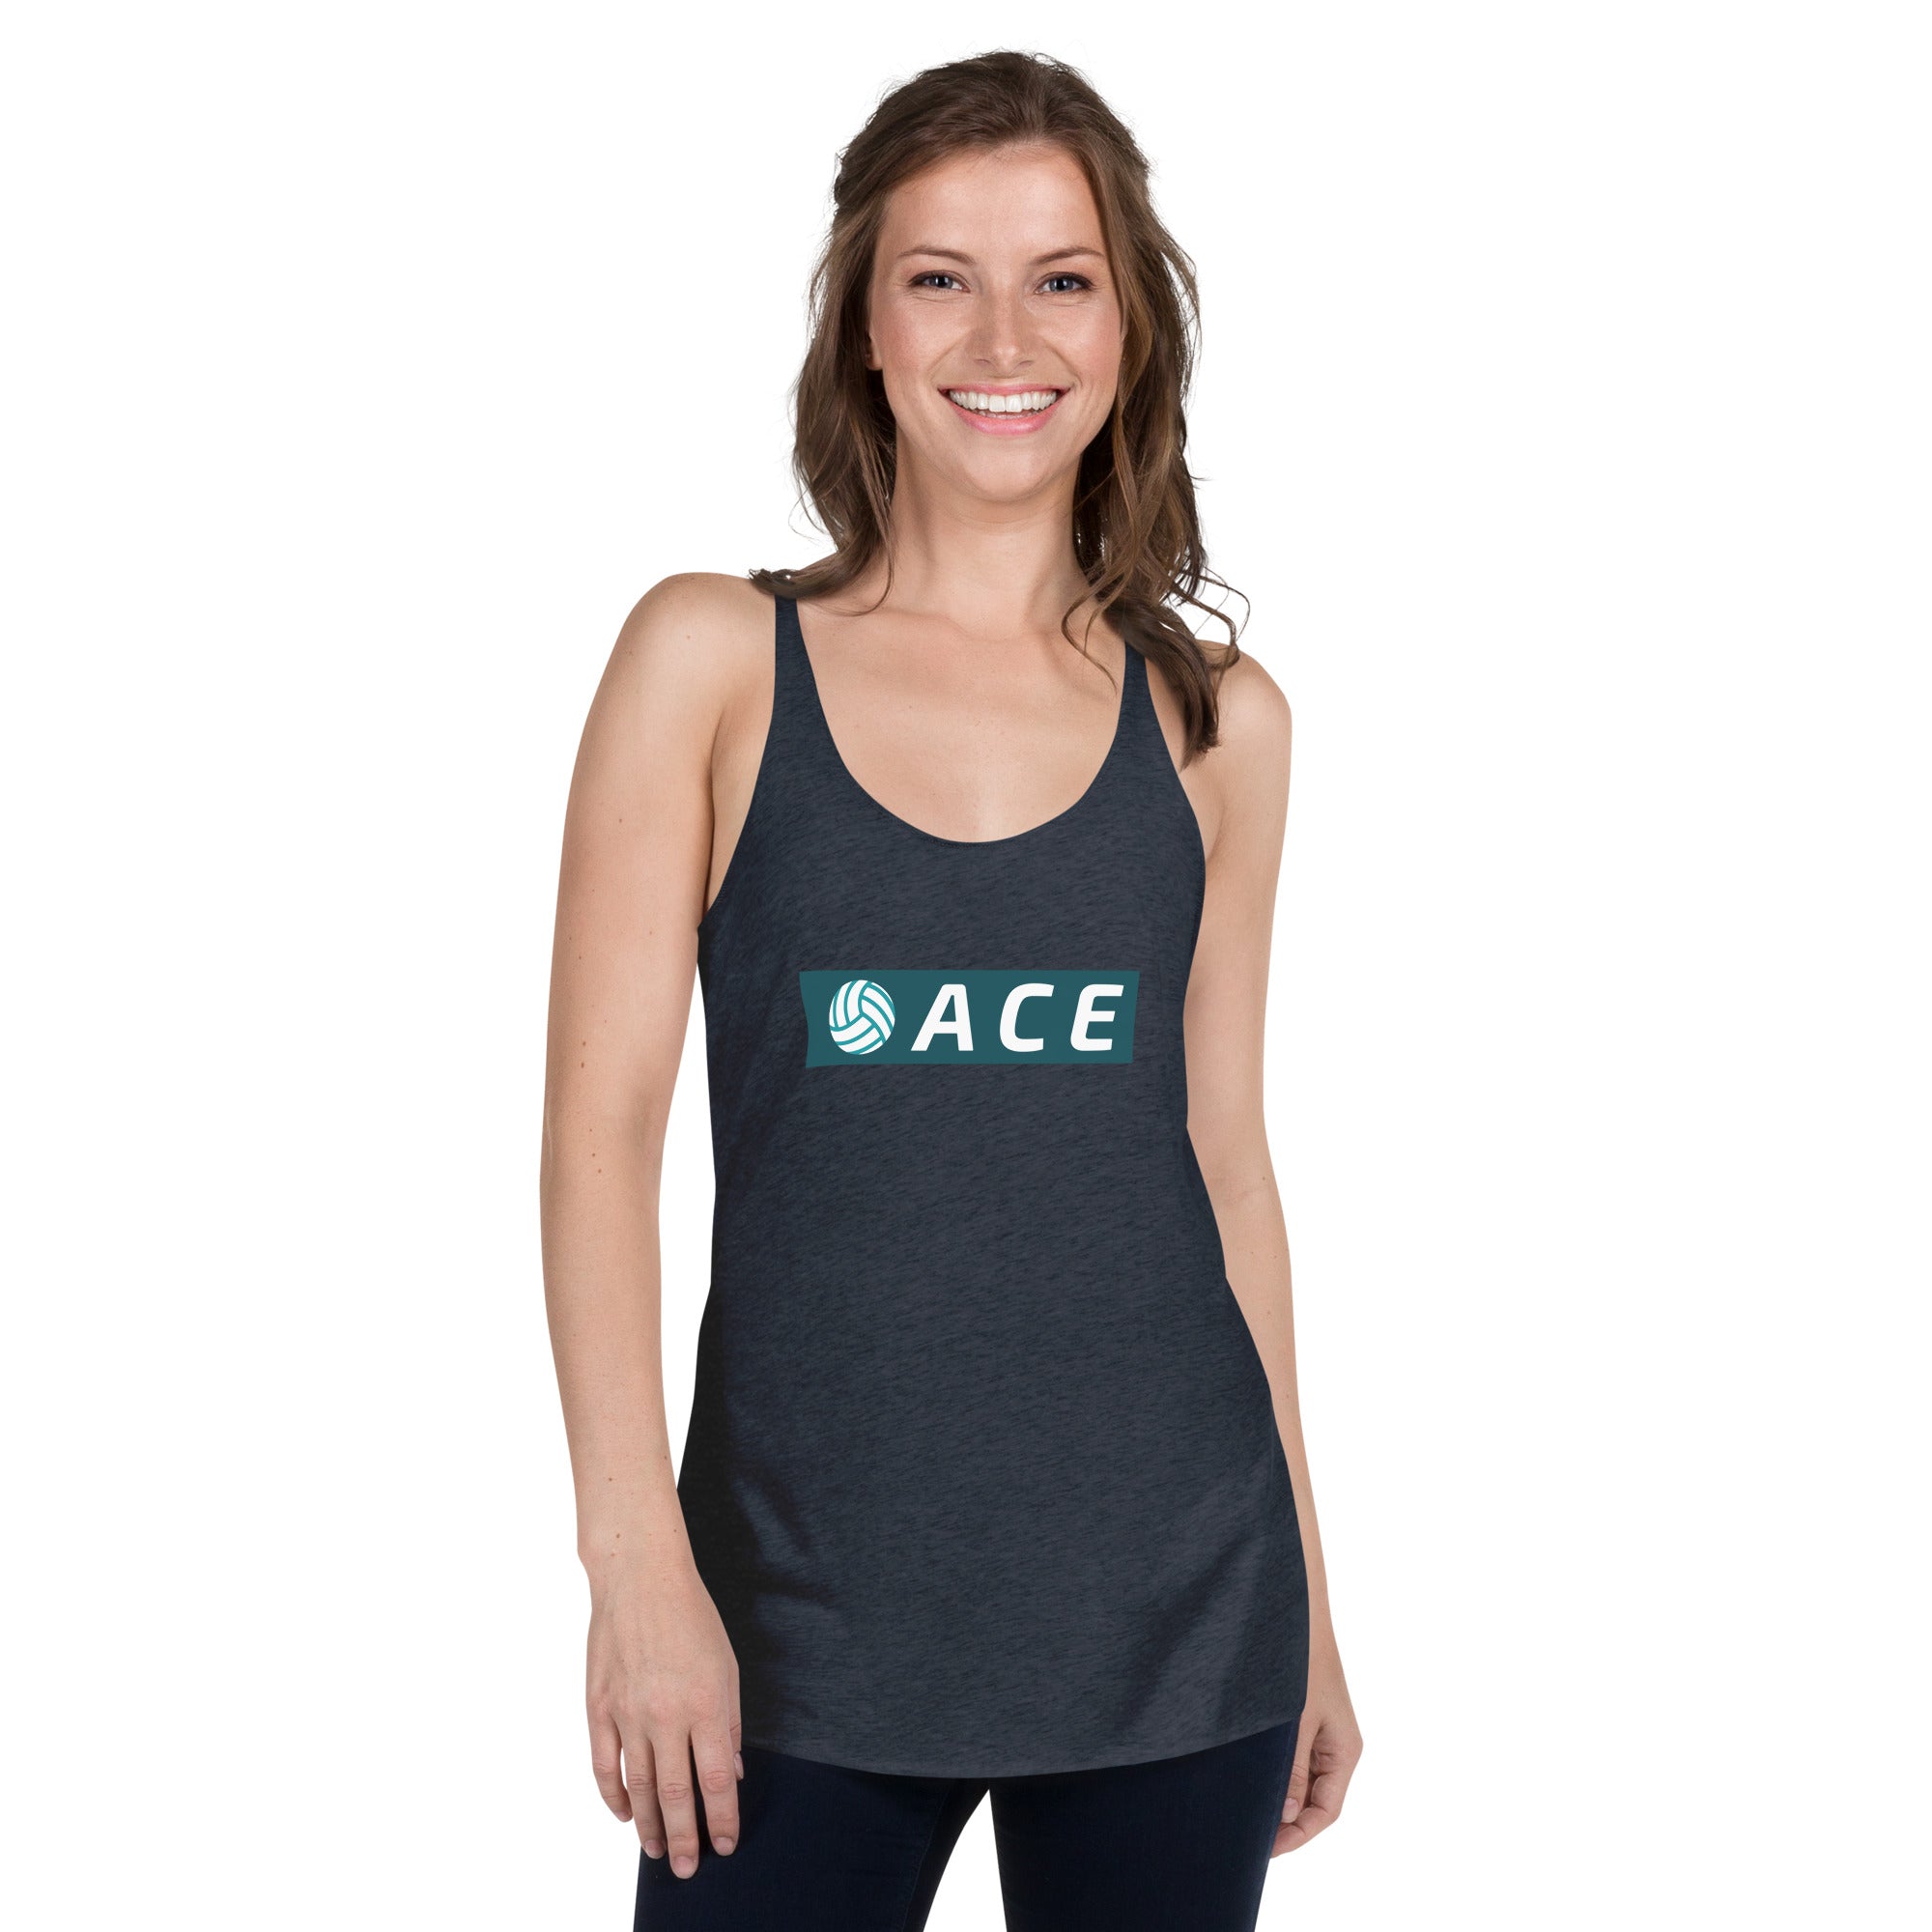 Ace Women's Racerback Tank